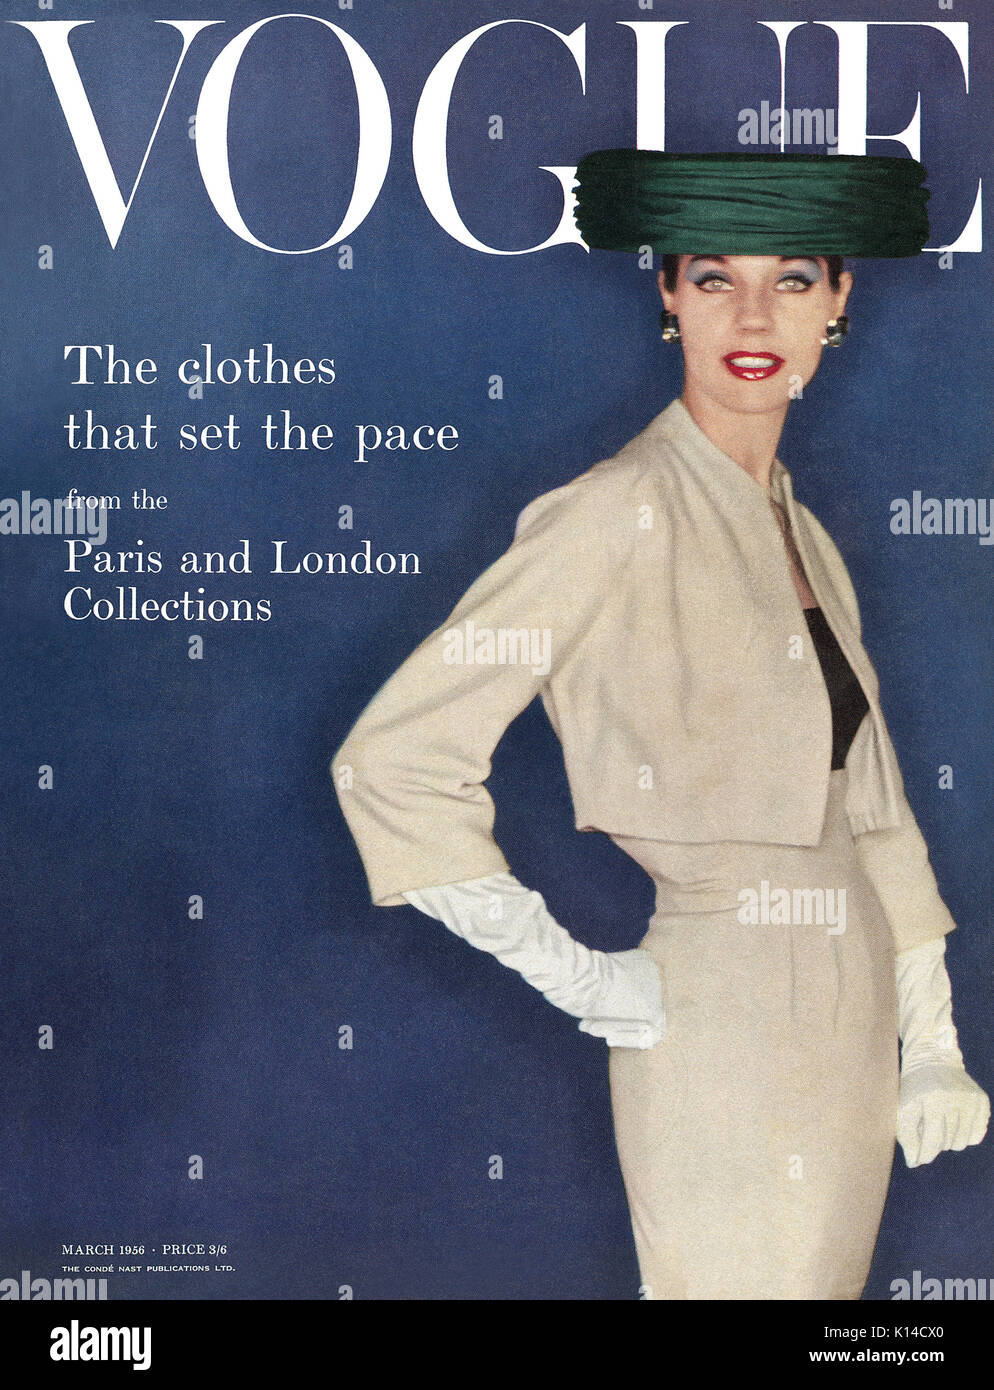 Vogue 1950s Fashion